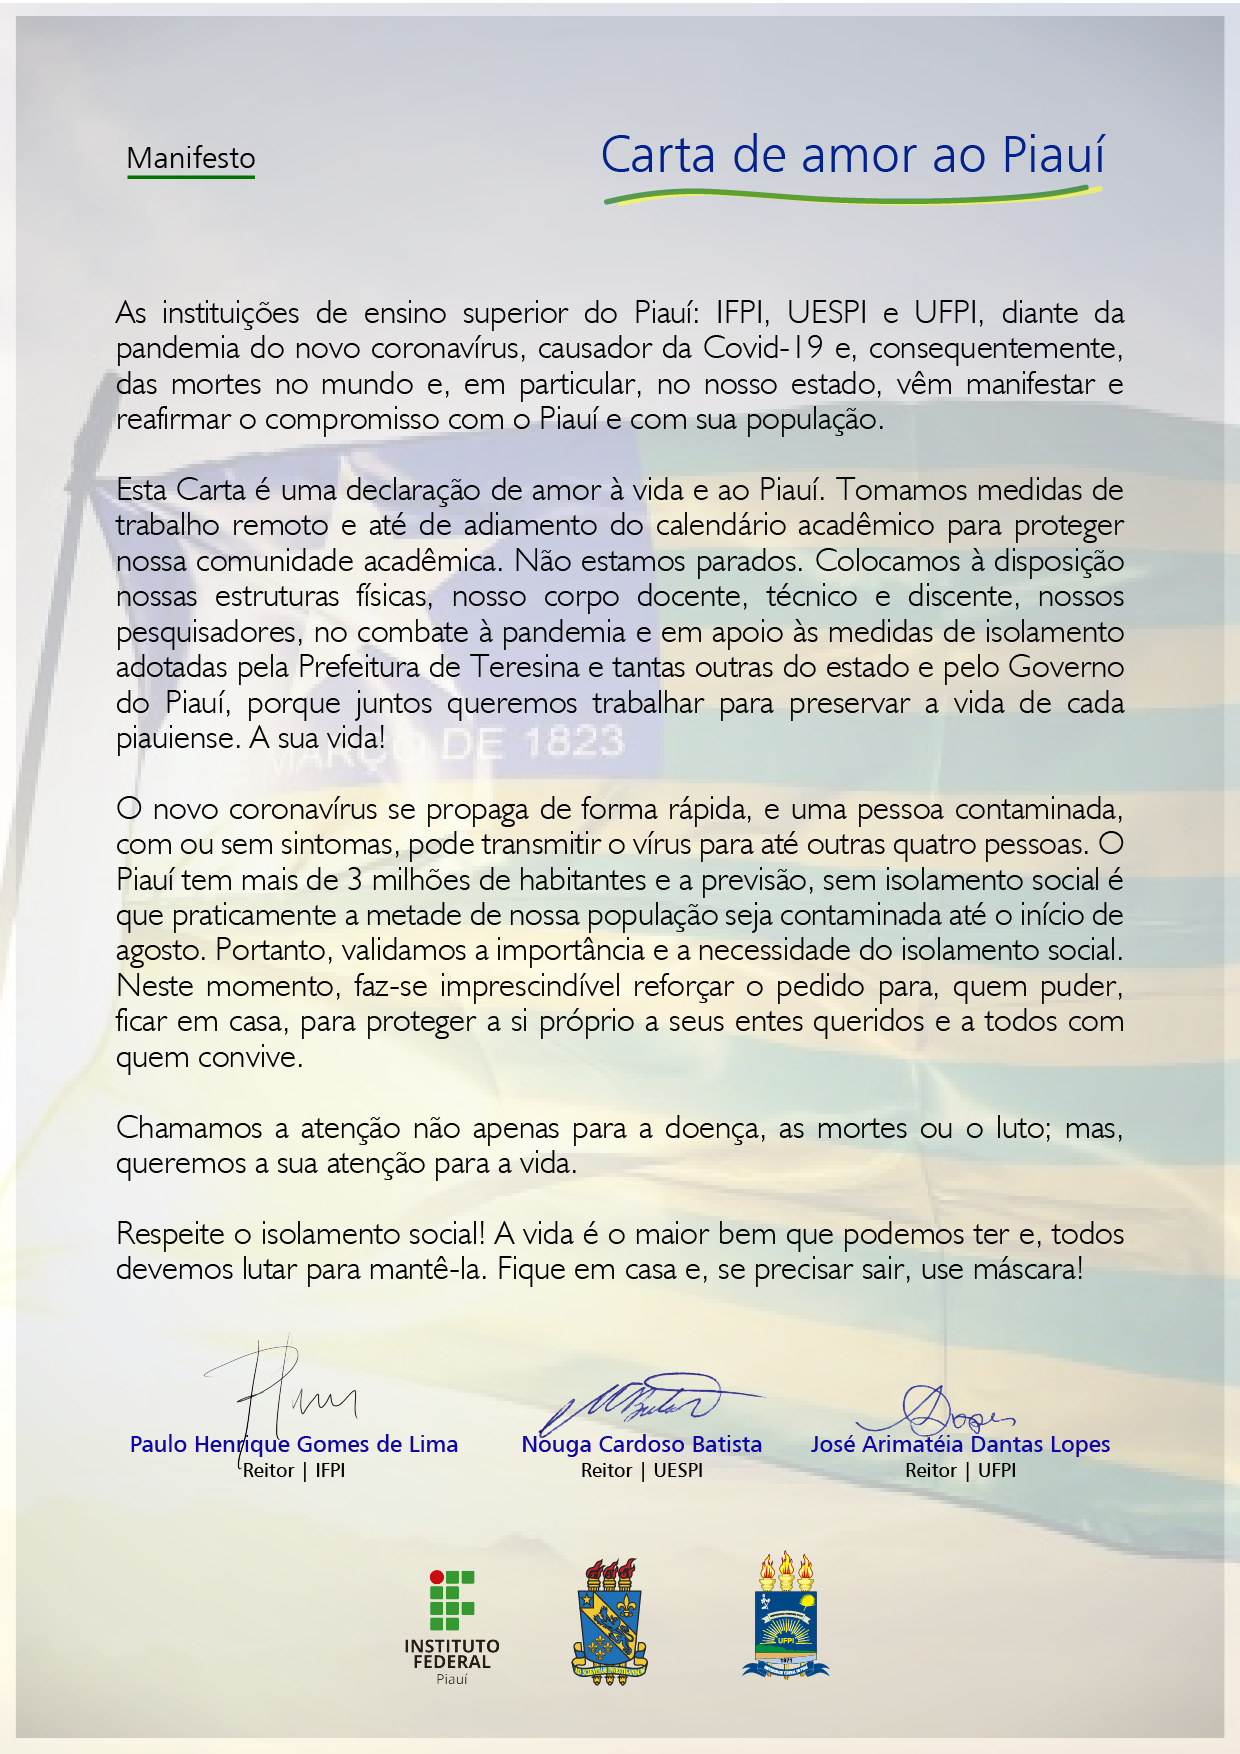 Manifesto Carta de Amor ao Piauí_A4 reduzido-01.png